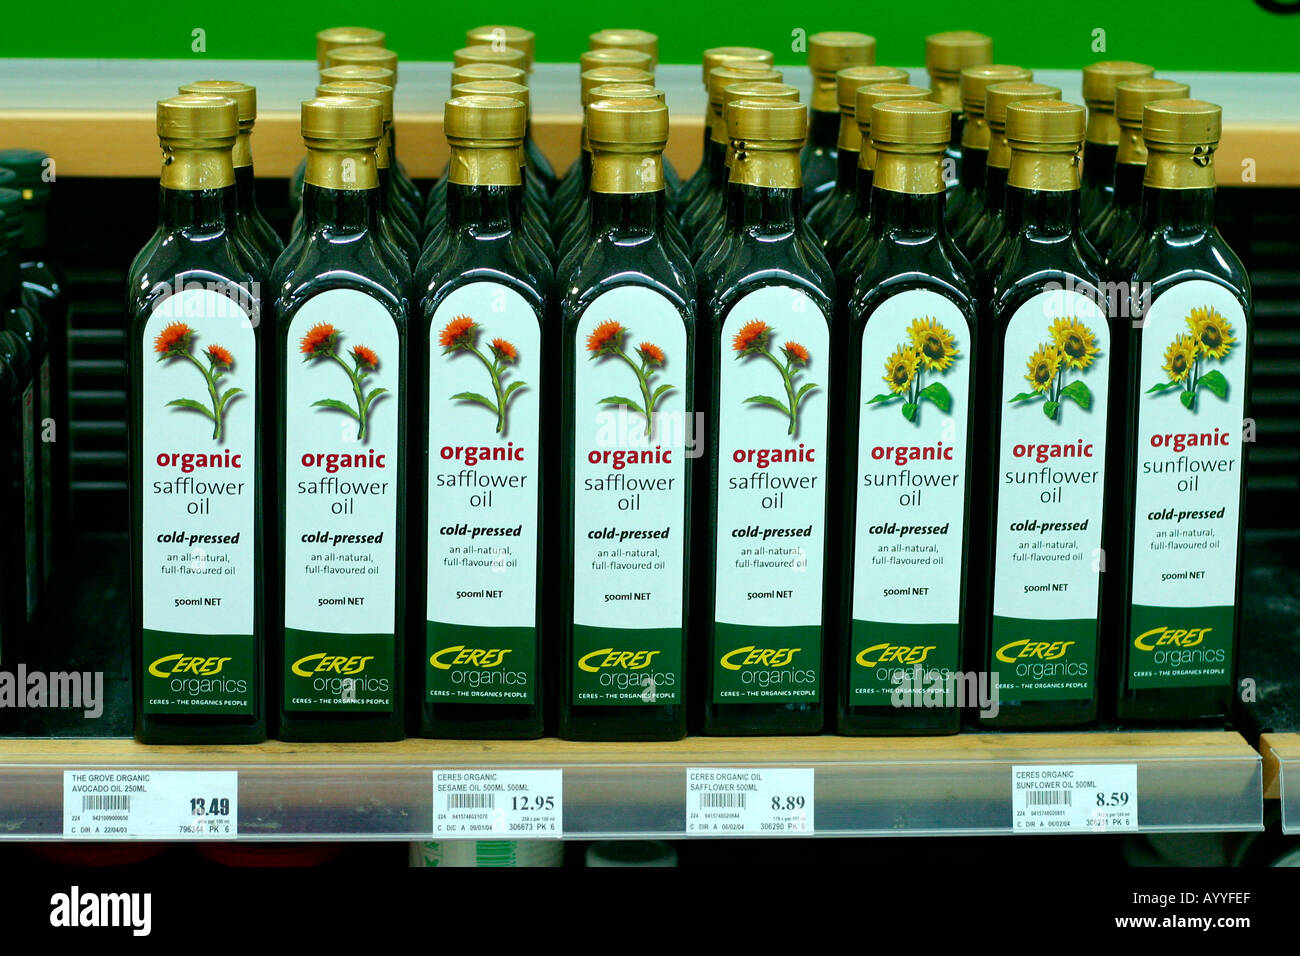 Organici di olio di cartamo nel supermercato Foto Stock